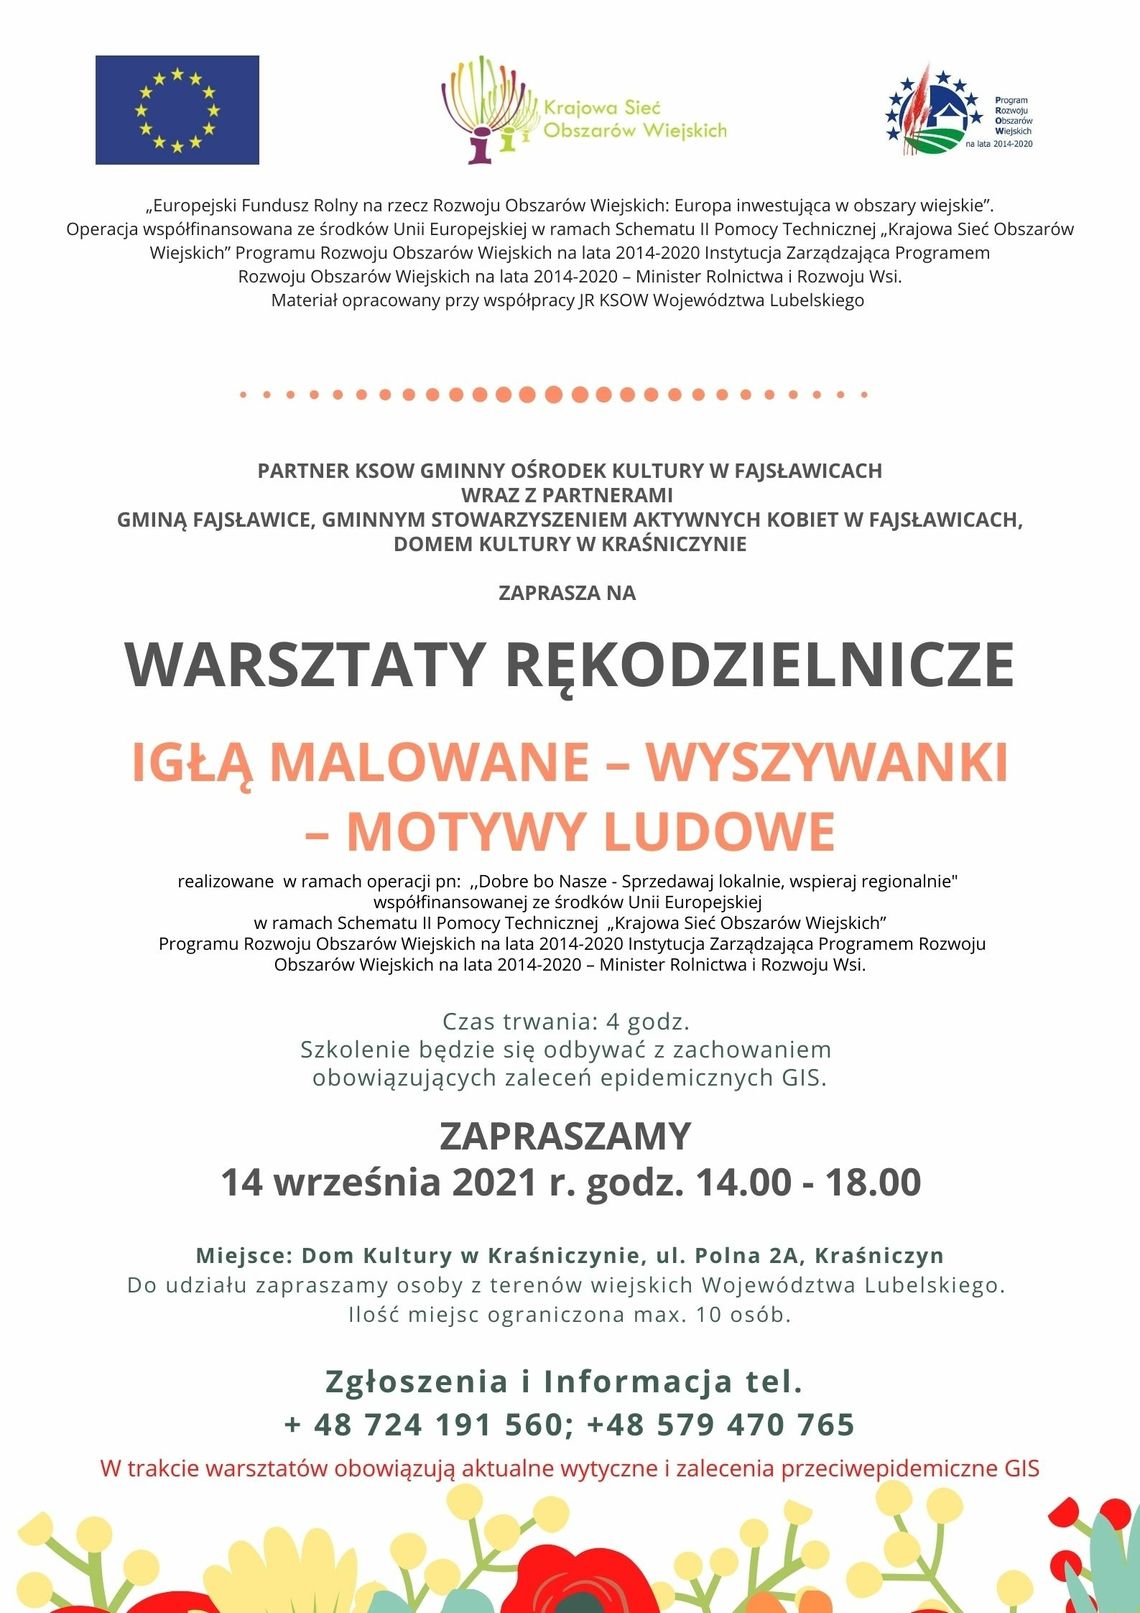 Gminny Ośrodek Kultury w Fajsławicach zaprasza na warsztaty